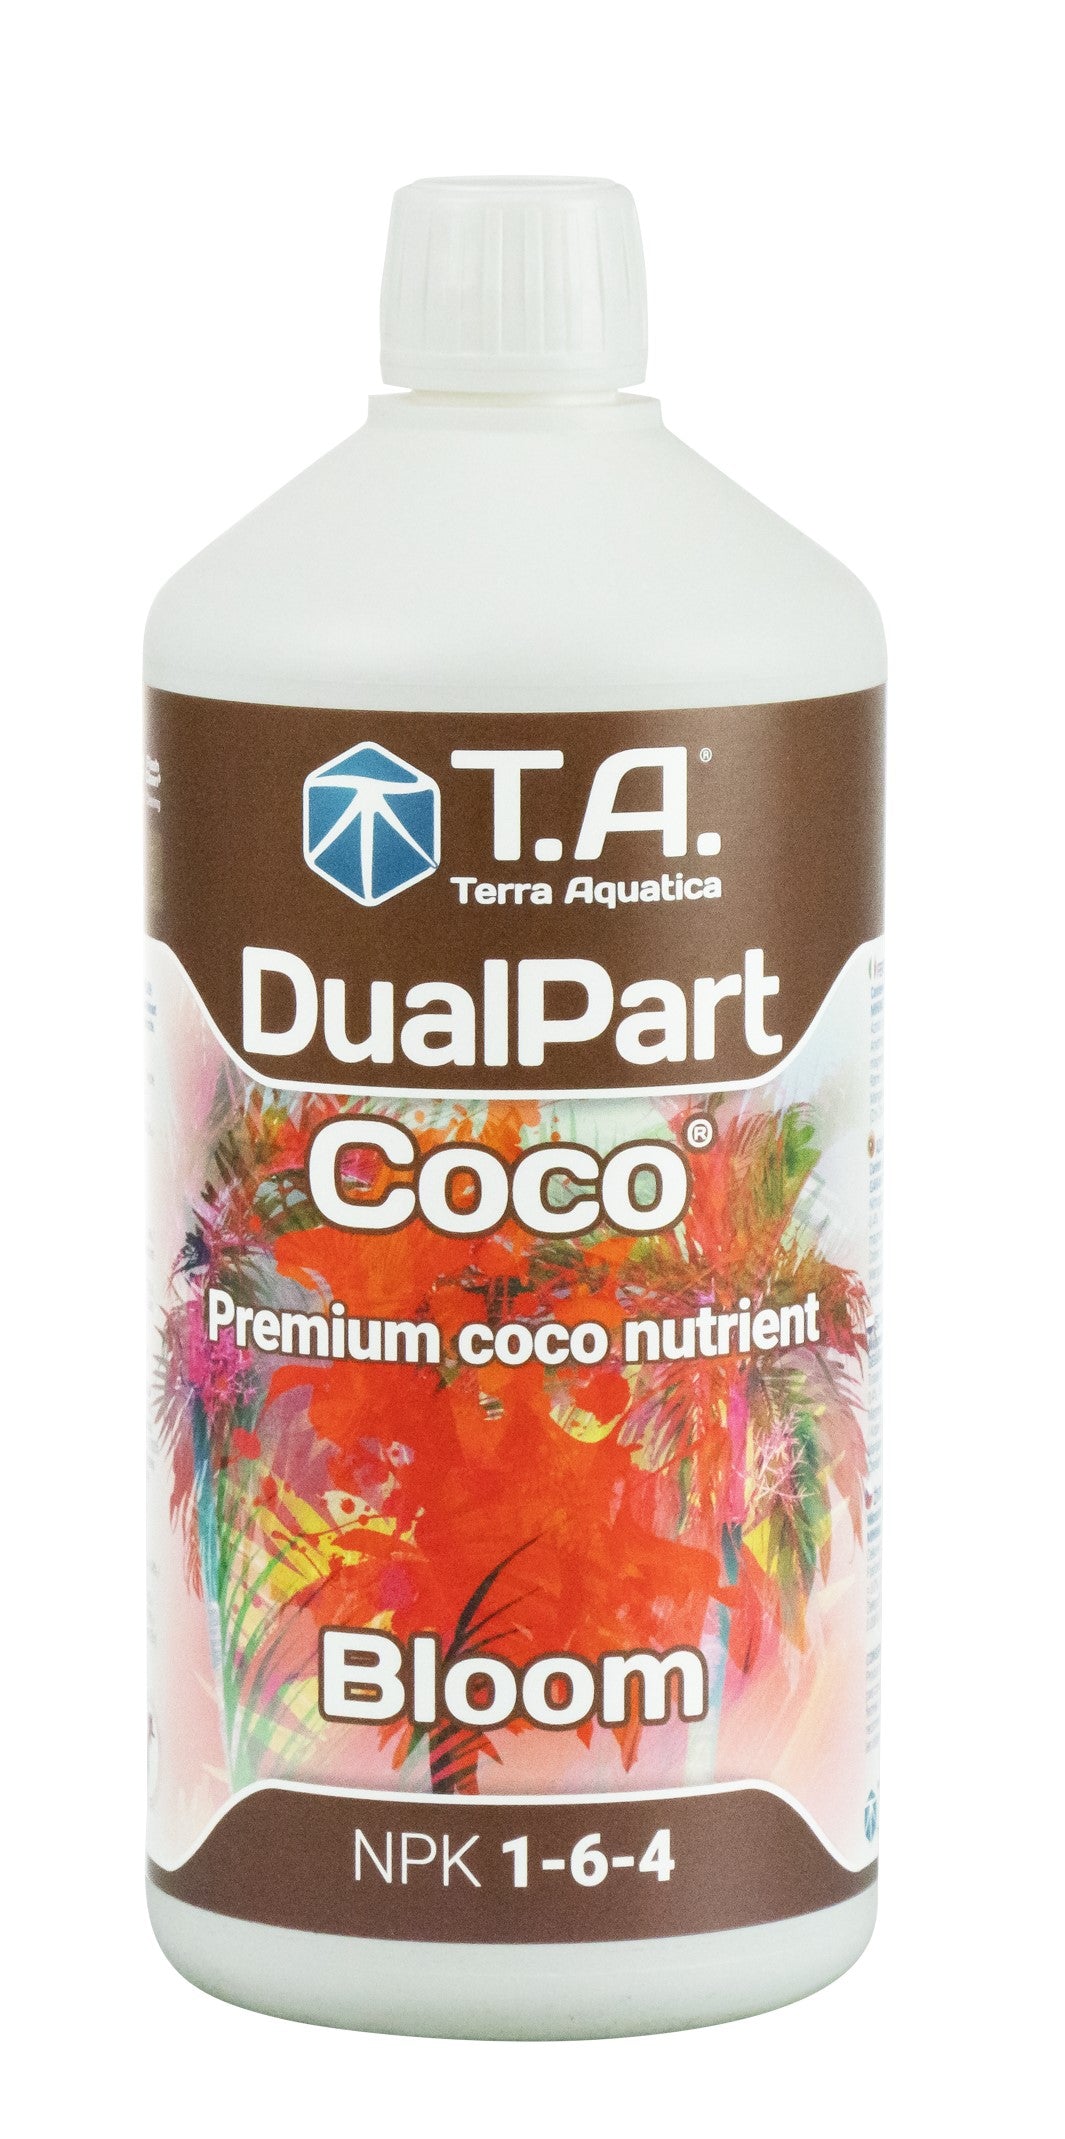 DualPart Coco